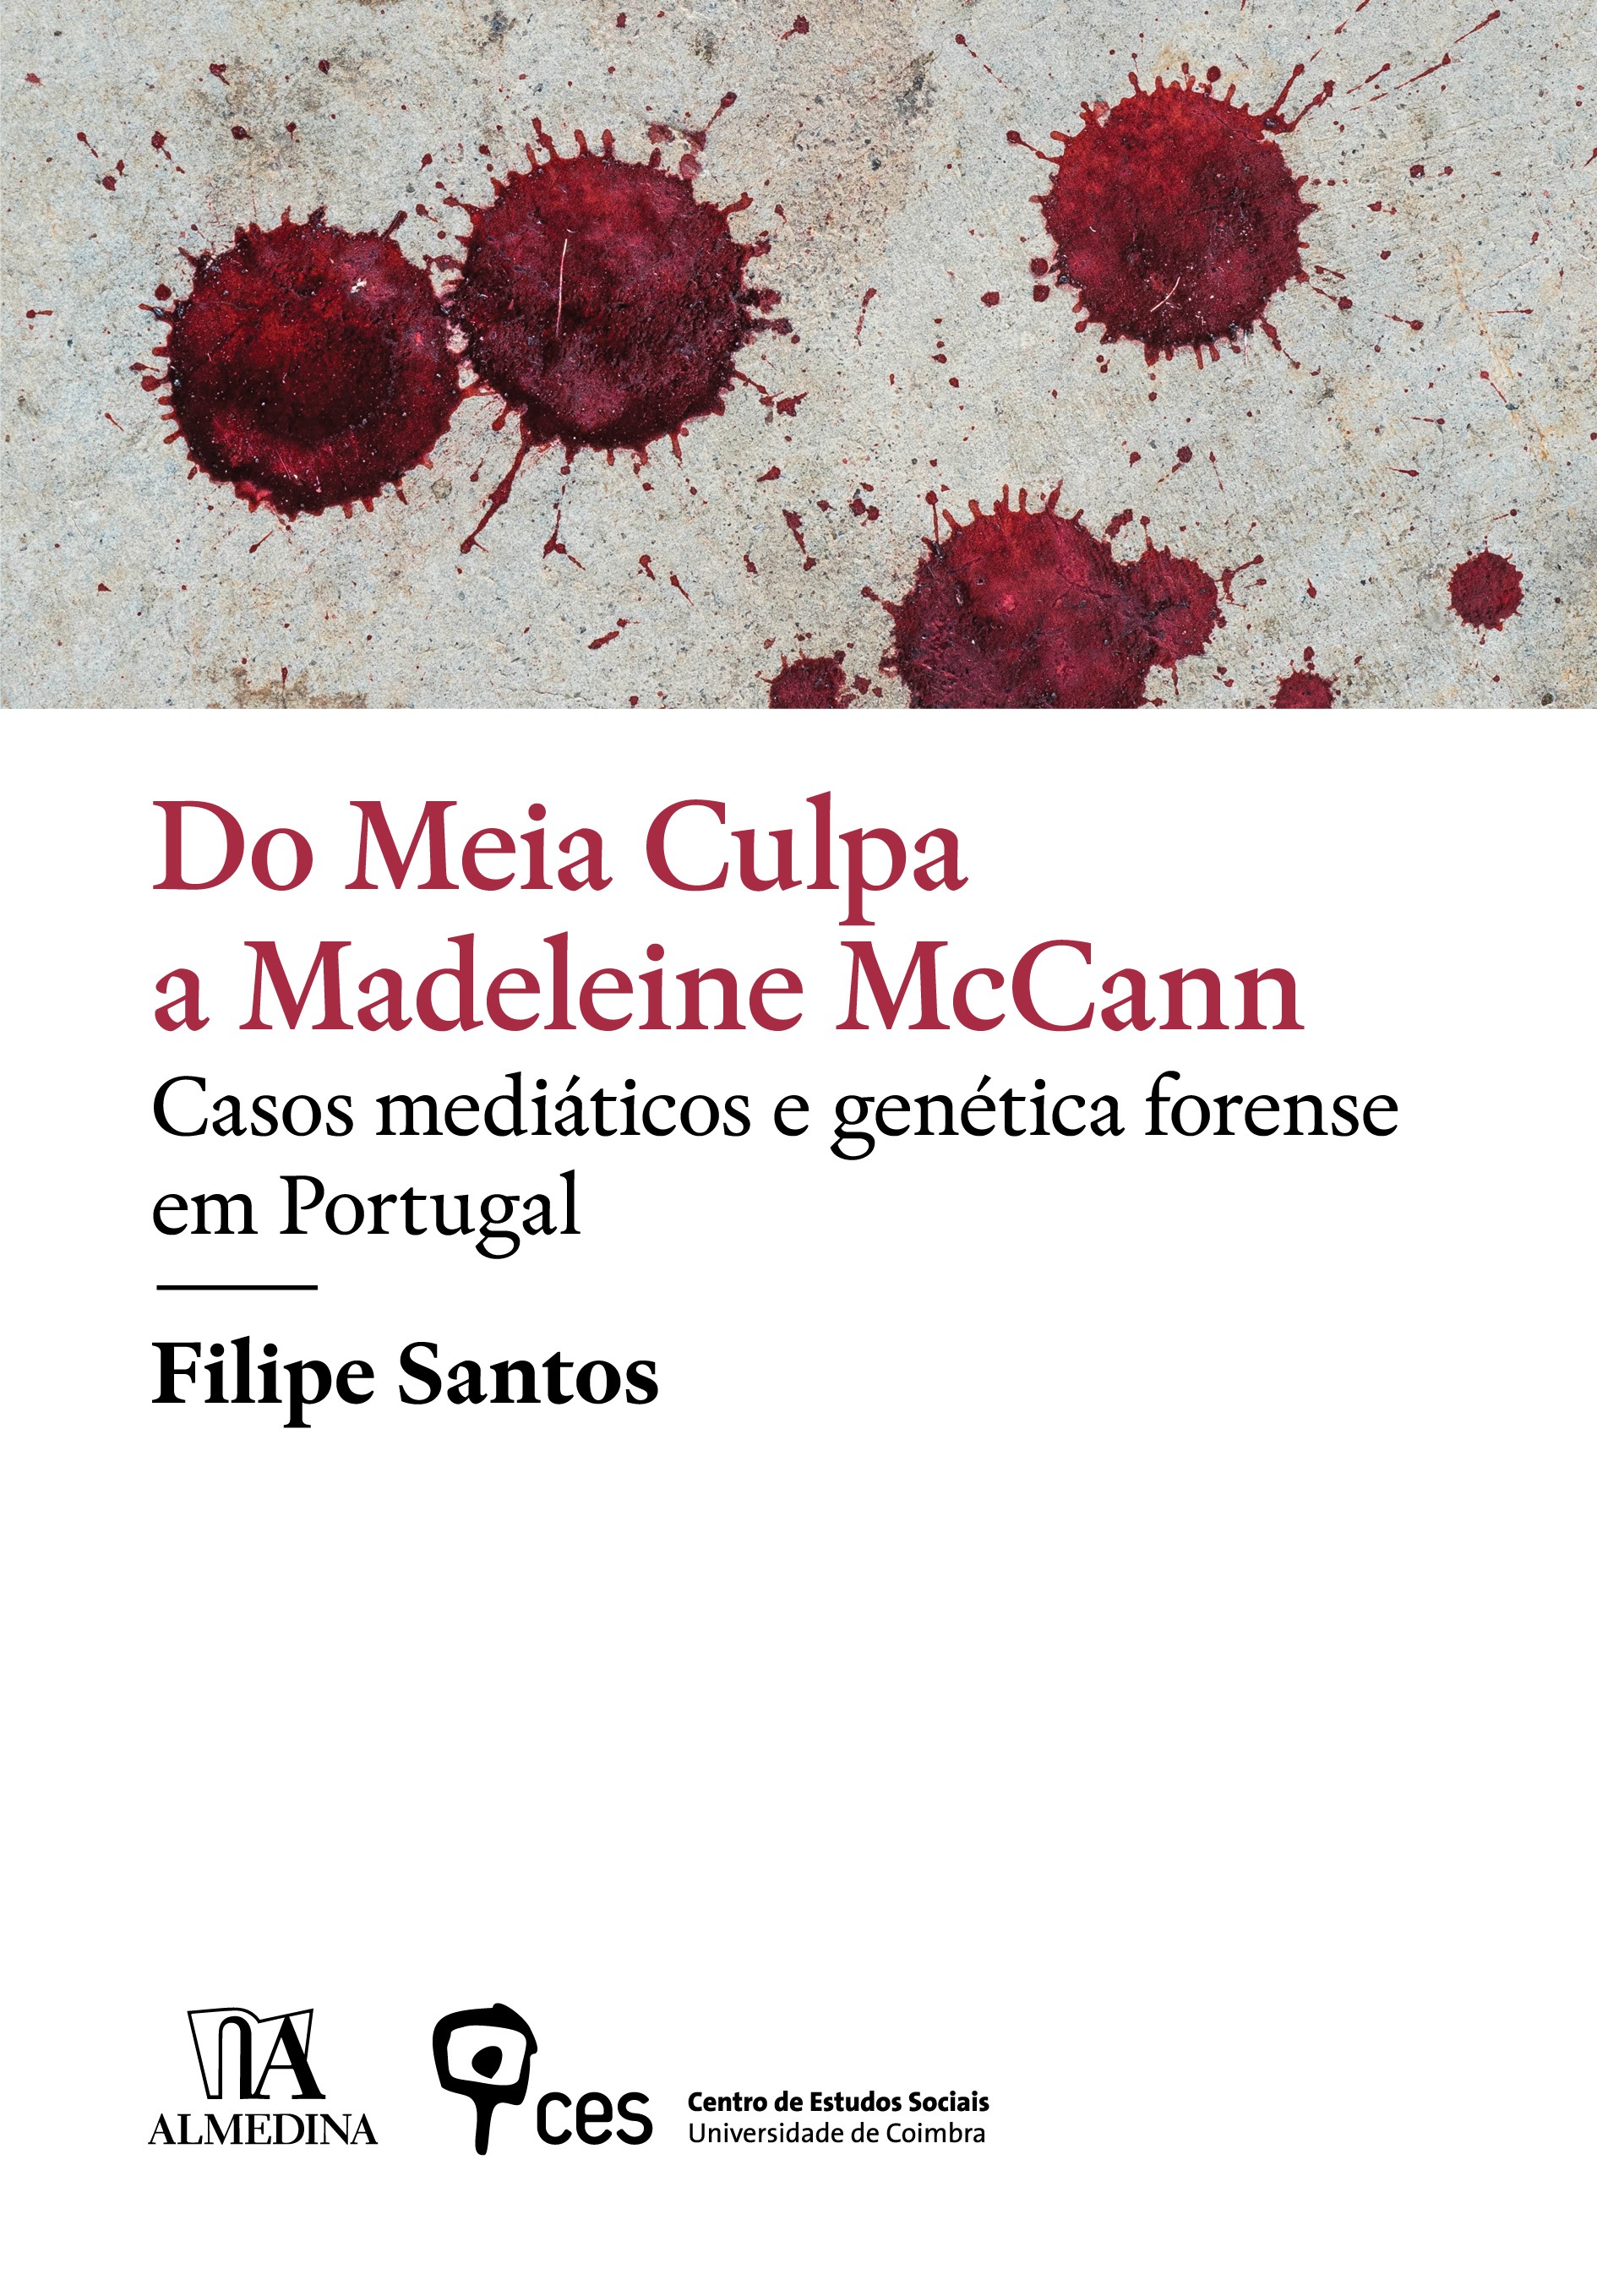 Do Meia Culpa a Madeleine McCann: casos mediáticos e genética forense em Portugal